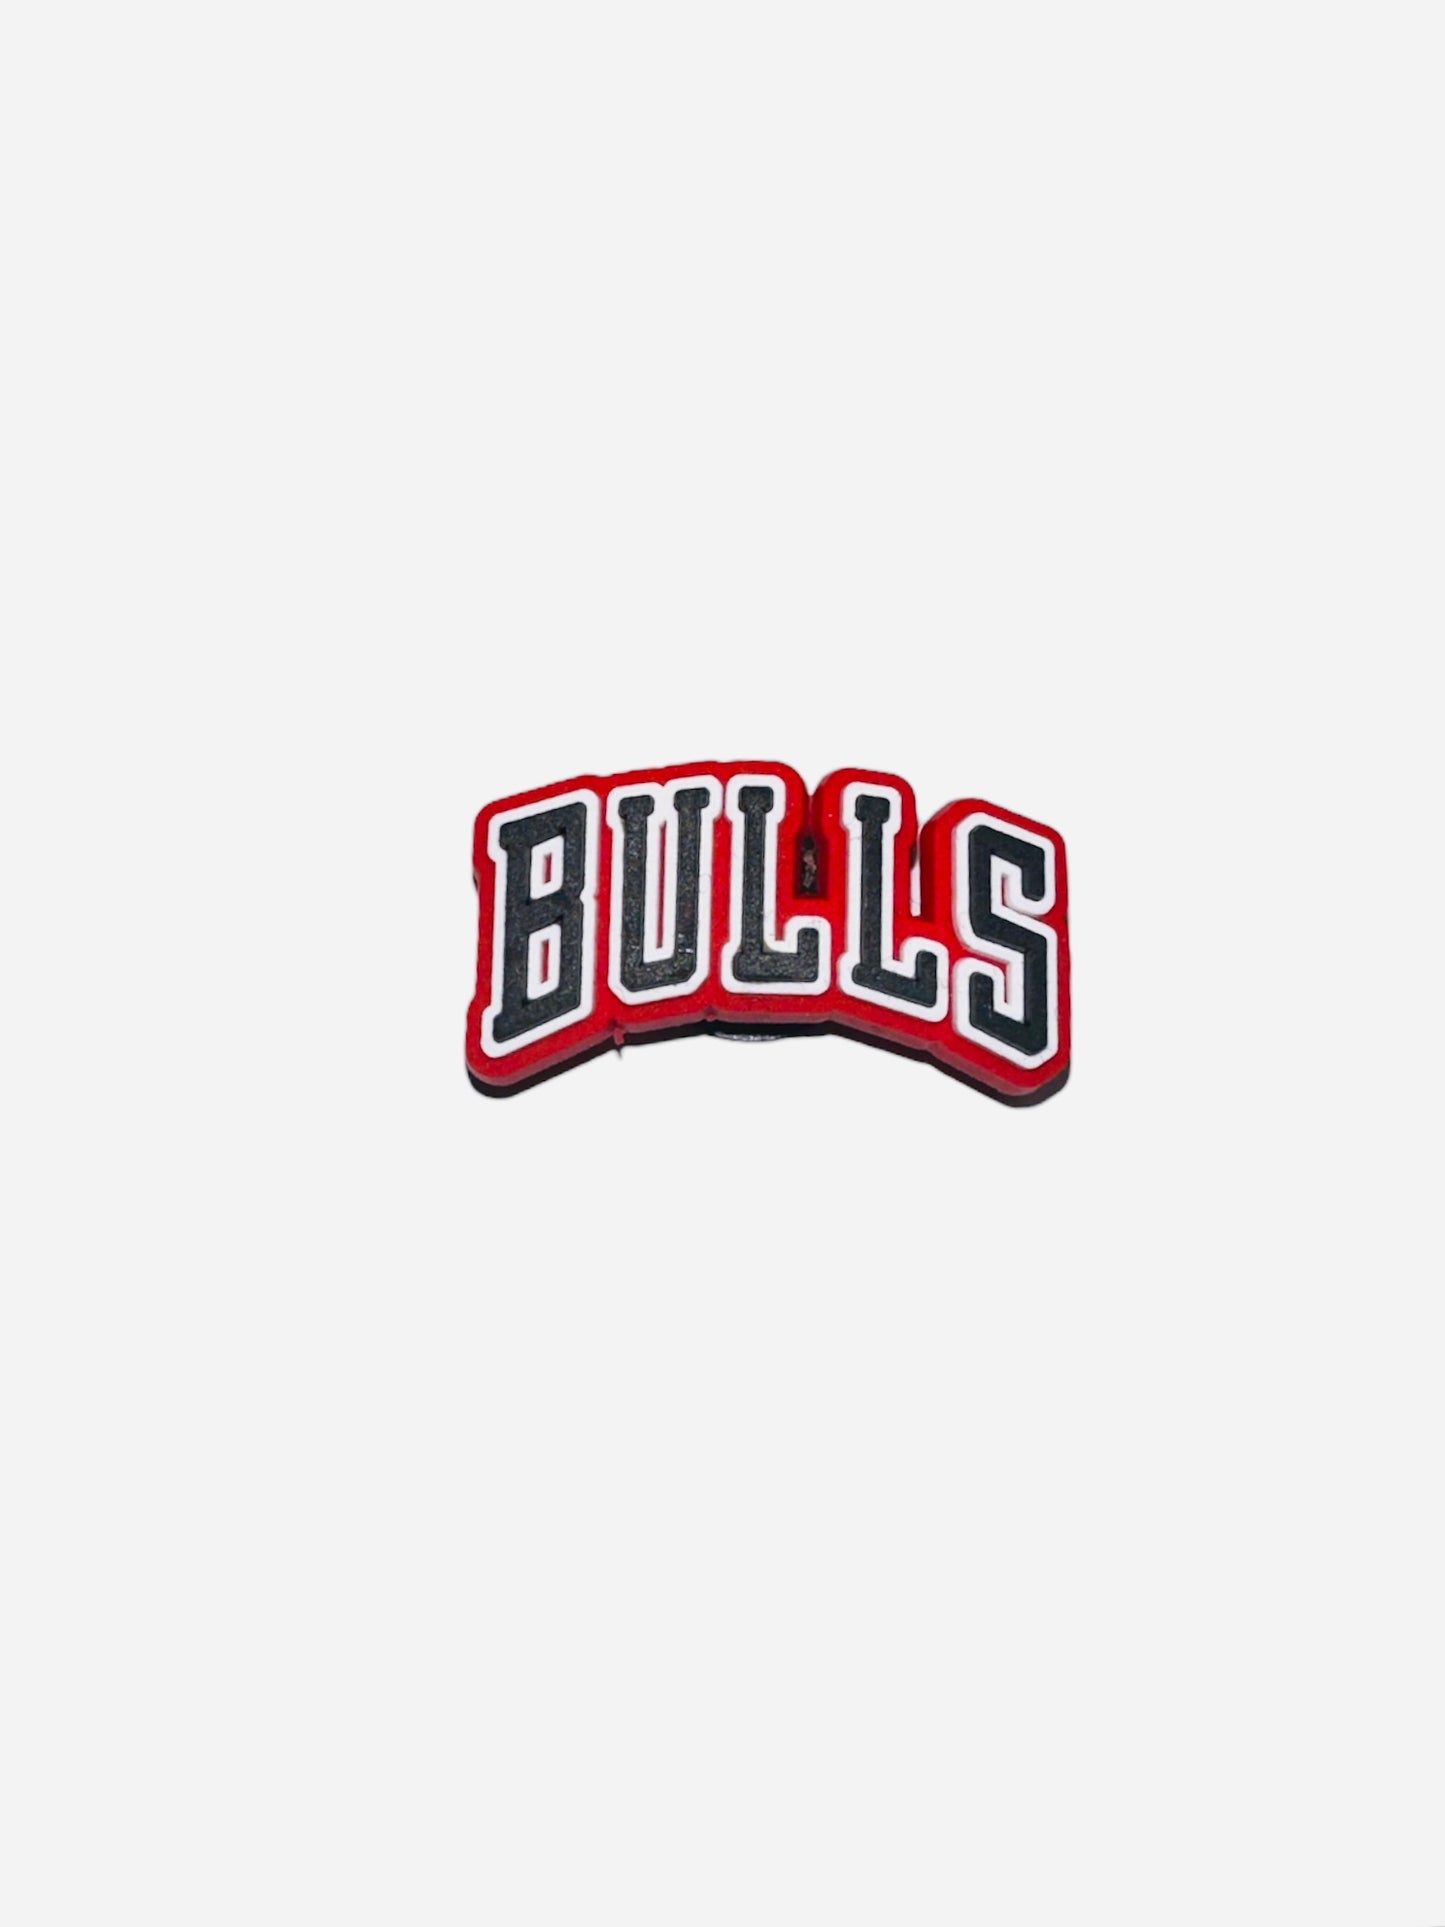 BiTZ - Bulls